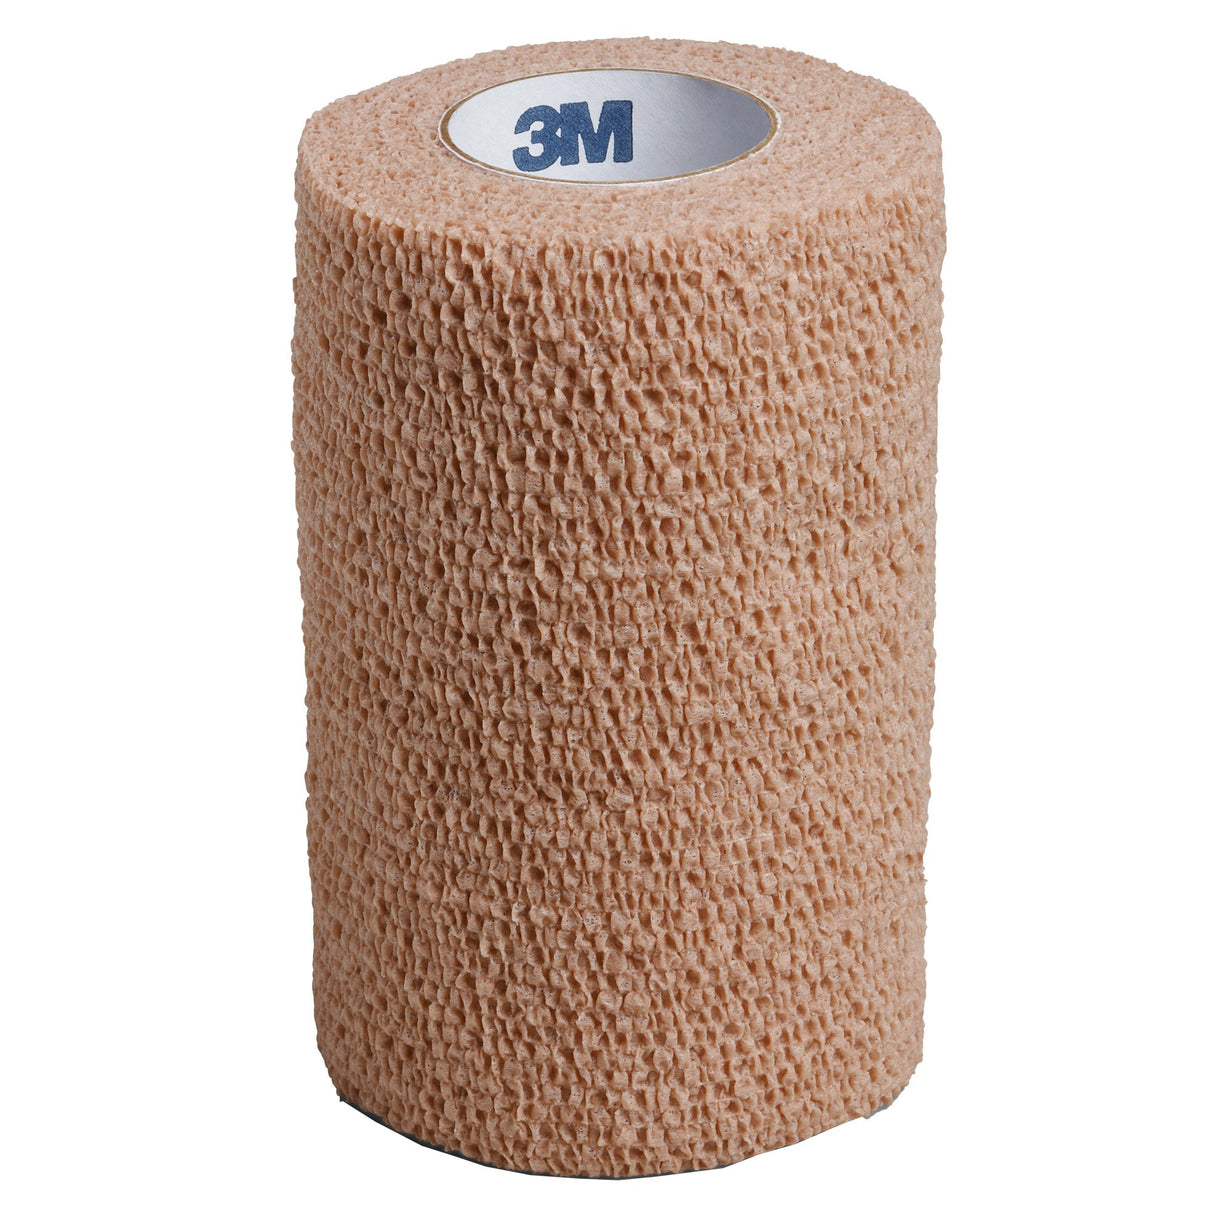 3M™ Coban™ Self-adherent Closure Cohesive Bandage, 4 Inch x 5 Yard